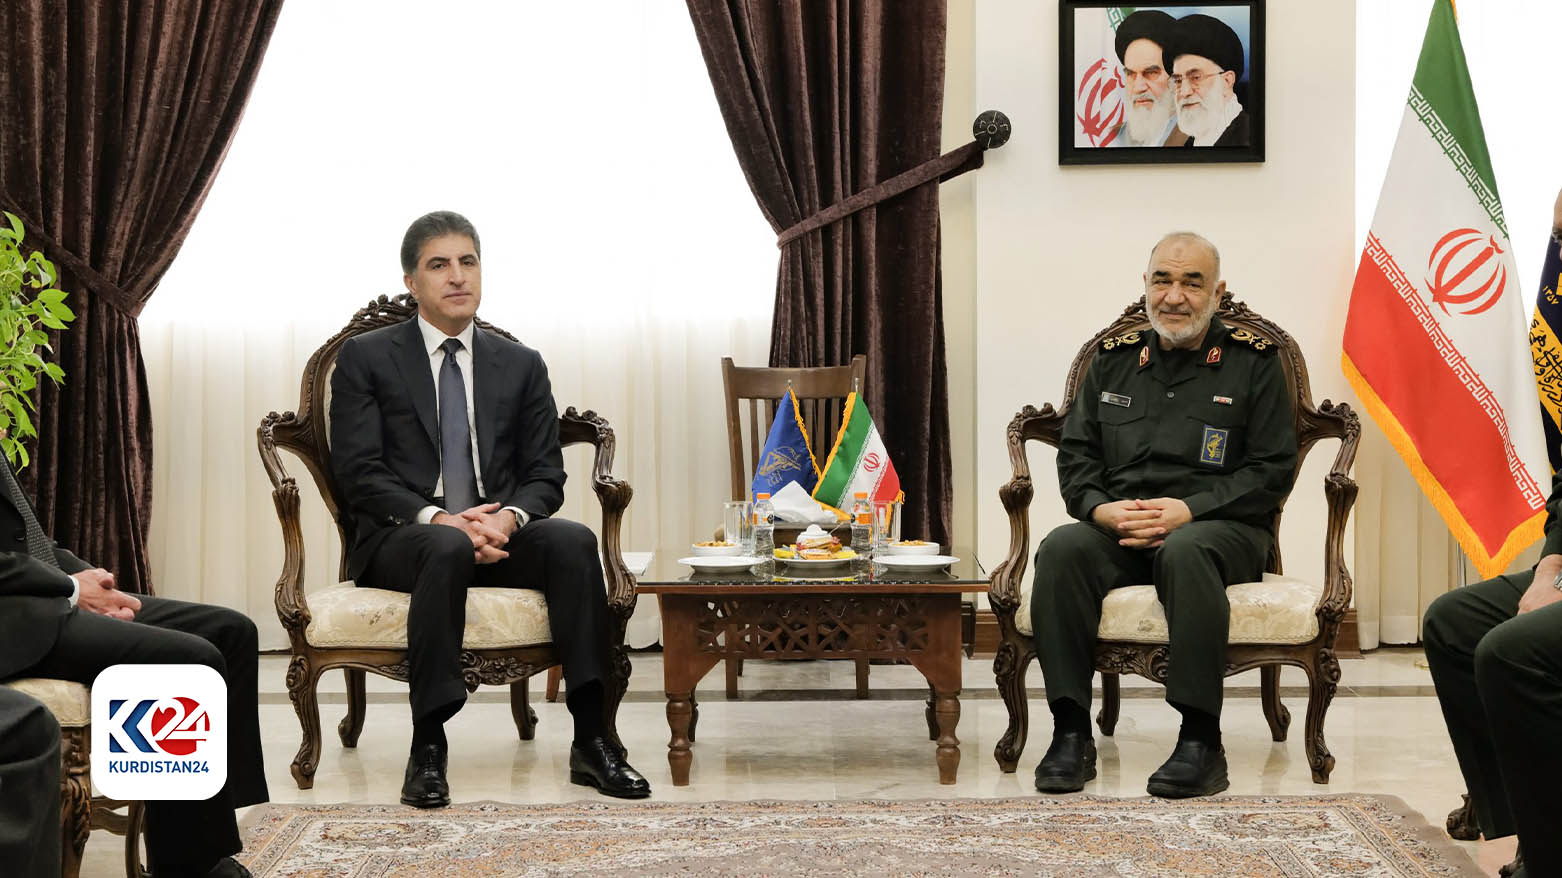 حسین سلامی، فرمانده کل سپاه پاسداران و نچیروان بارزانی، رئیس اقلیم کوردستان